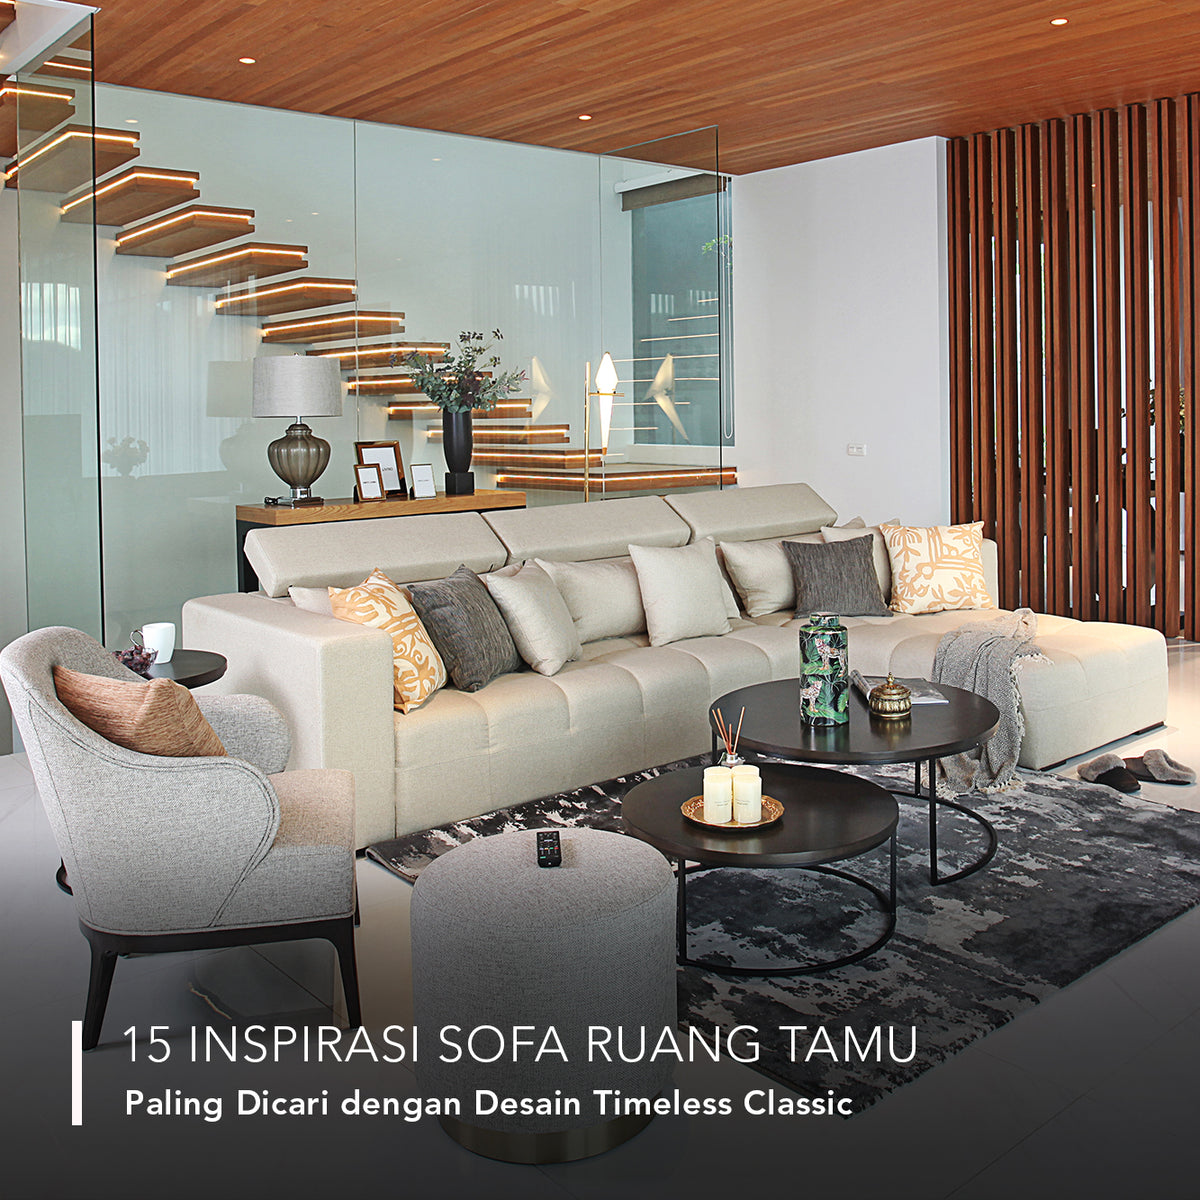 15 Inspirasi Sofa Ruang Tamu Paling Dicari dengan Desain Timeless Classic